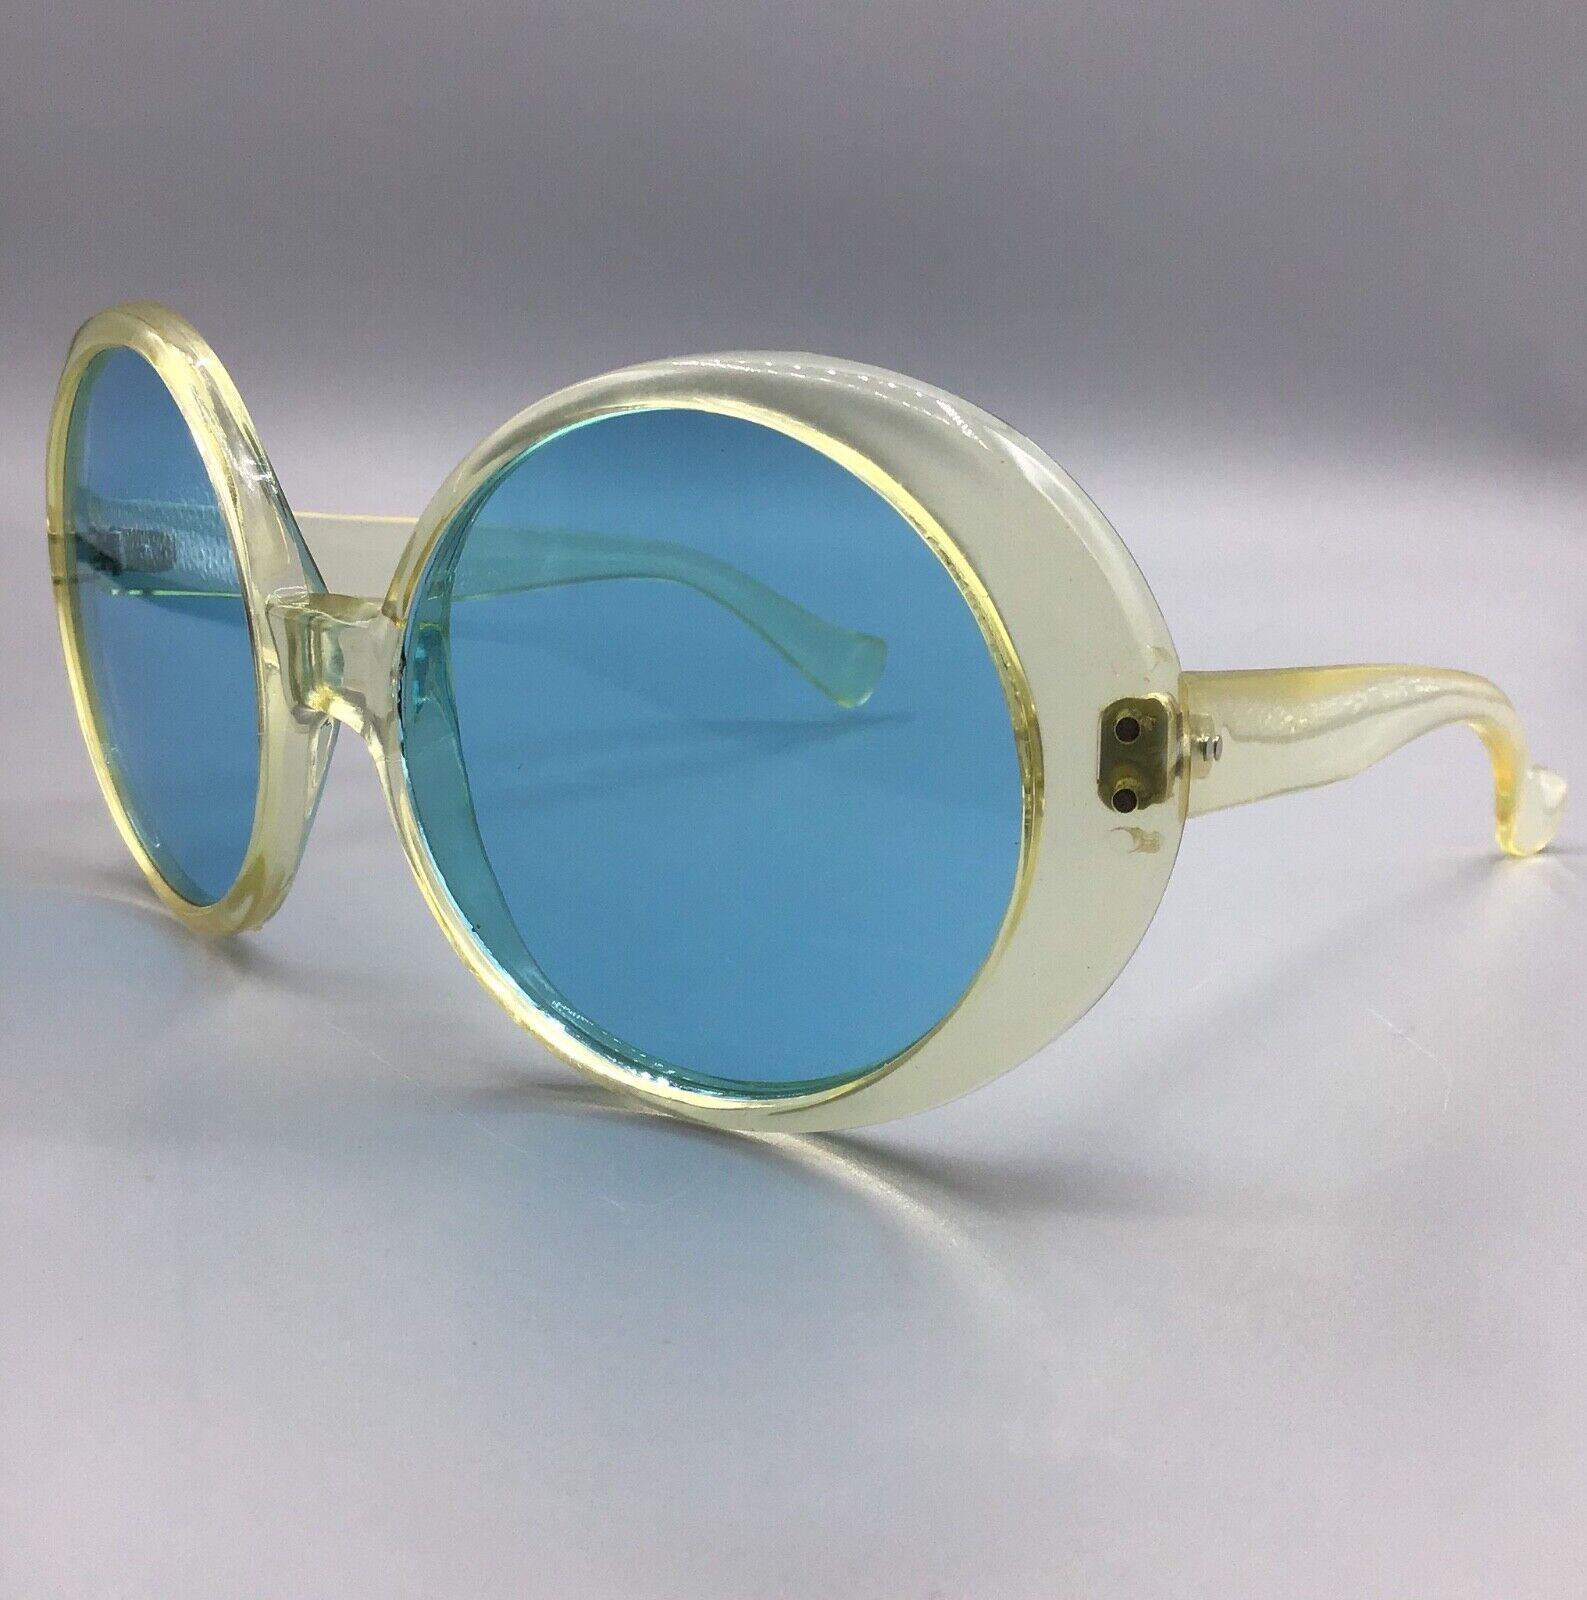 Italy occhiale da sole Sunglasses vintage light blue lens lunettes sonnenbrillen